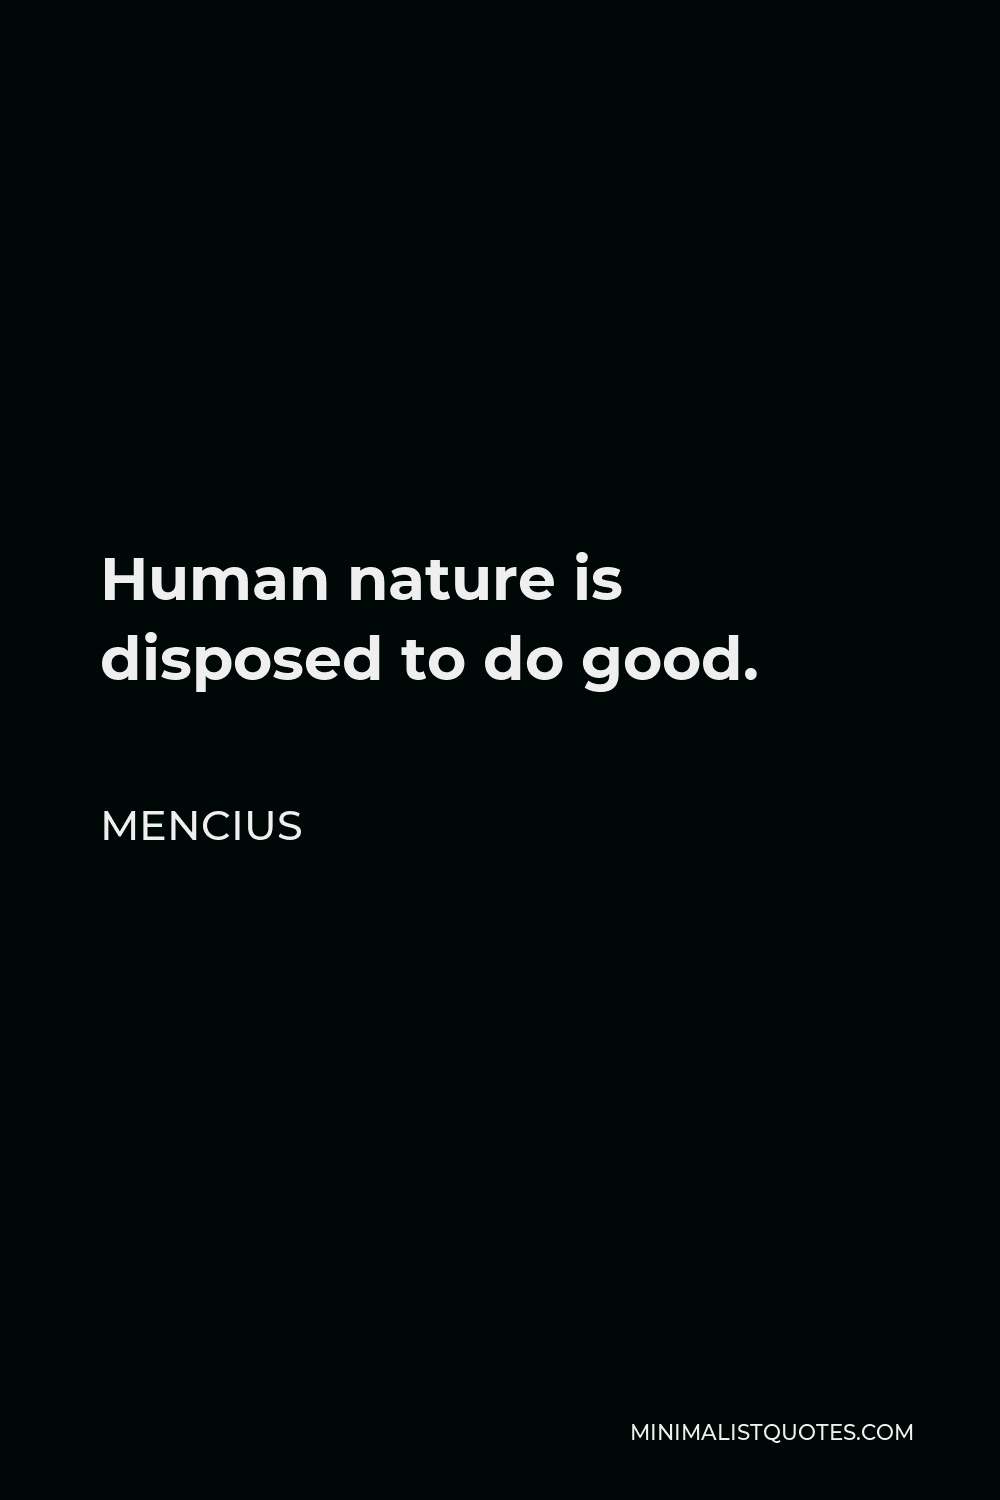 Mencius Quote: Human nature disposed to good.